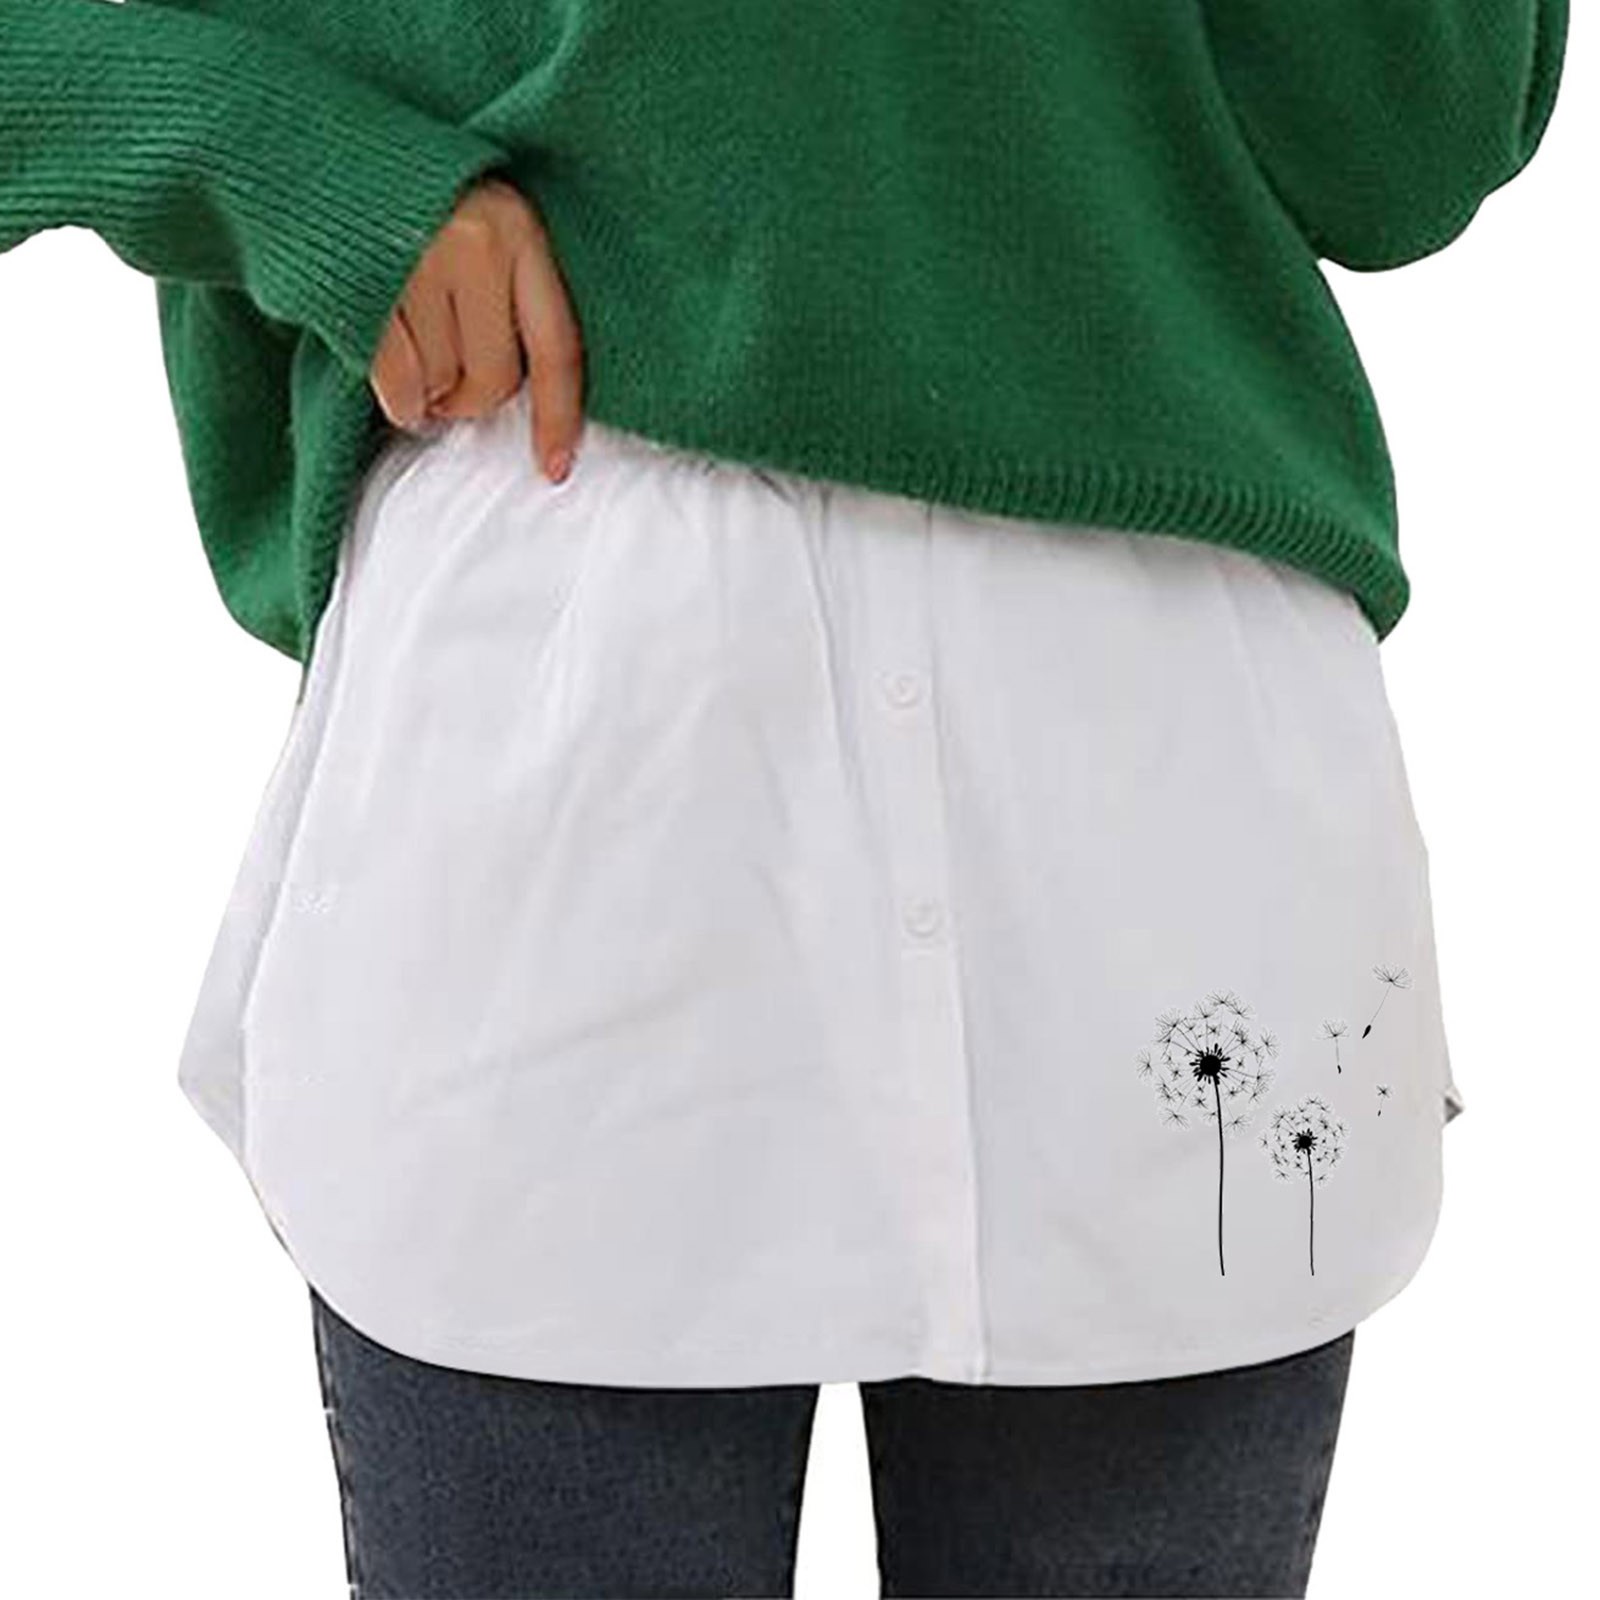 Shirt Extender for Women Women's Mini Underskirt Lower Skirt Sweep Shirt  Extension Skirt With Buttons Shirt Extension Layering Top Bottom 